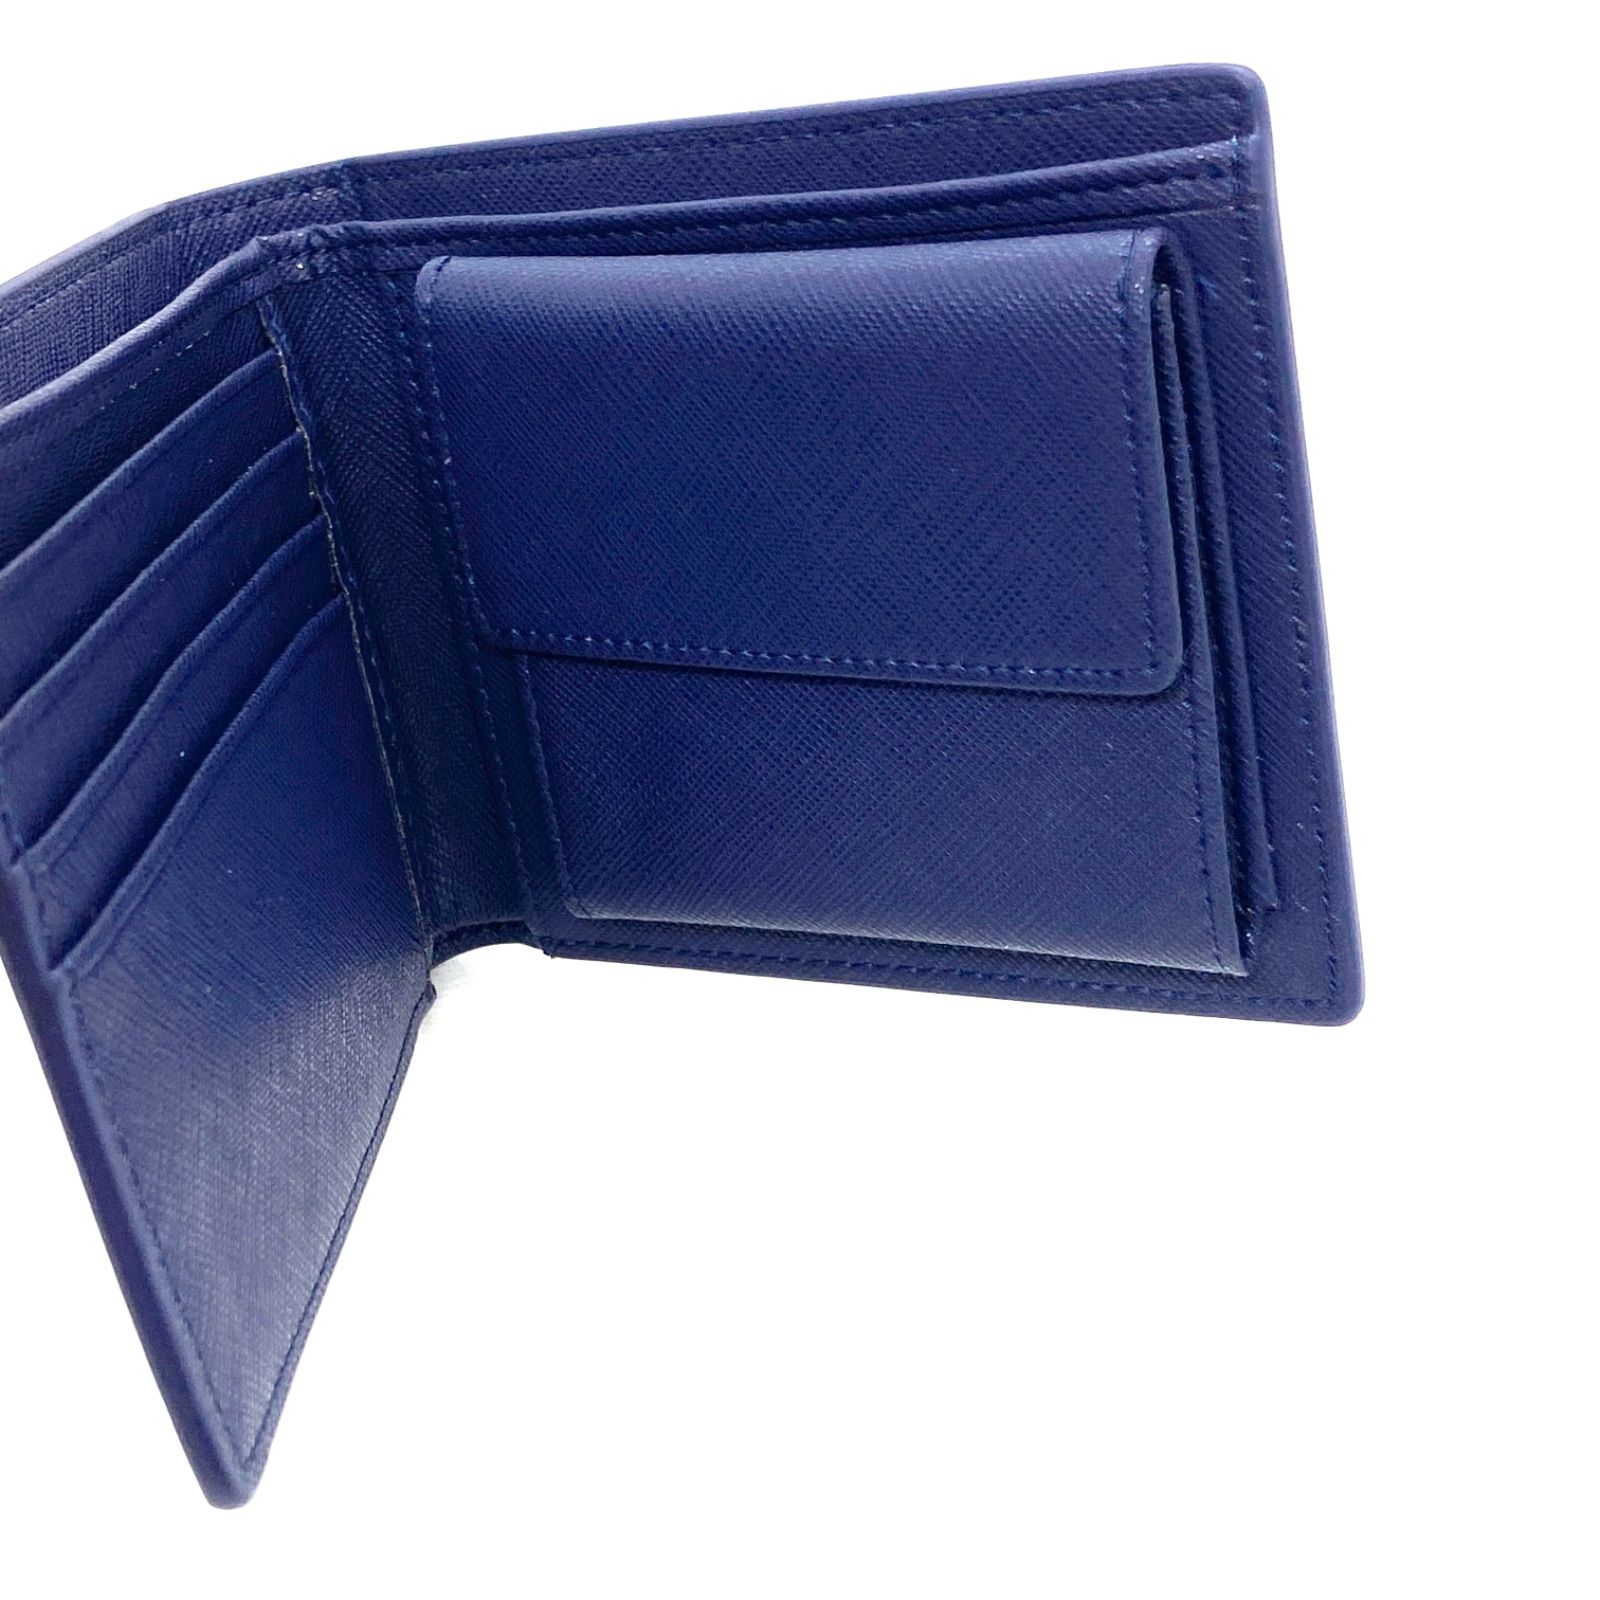 鮮やかなカラー】 本革 コードバン風 二つ折り財布 紺 メルカリShops